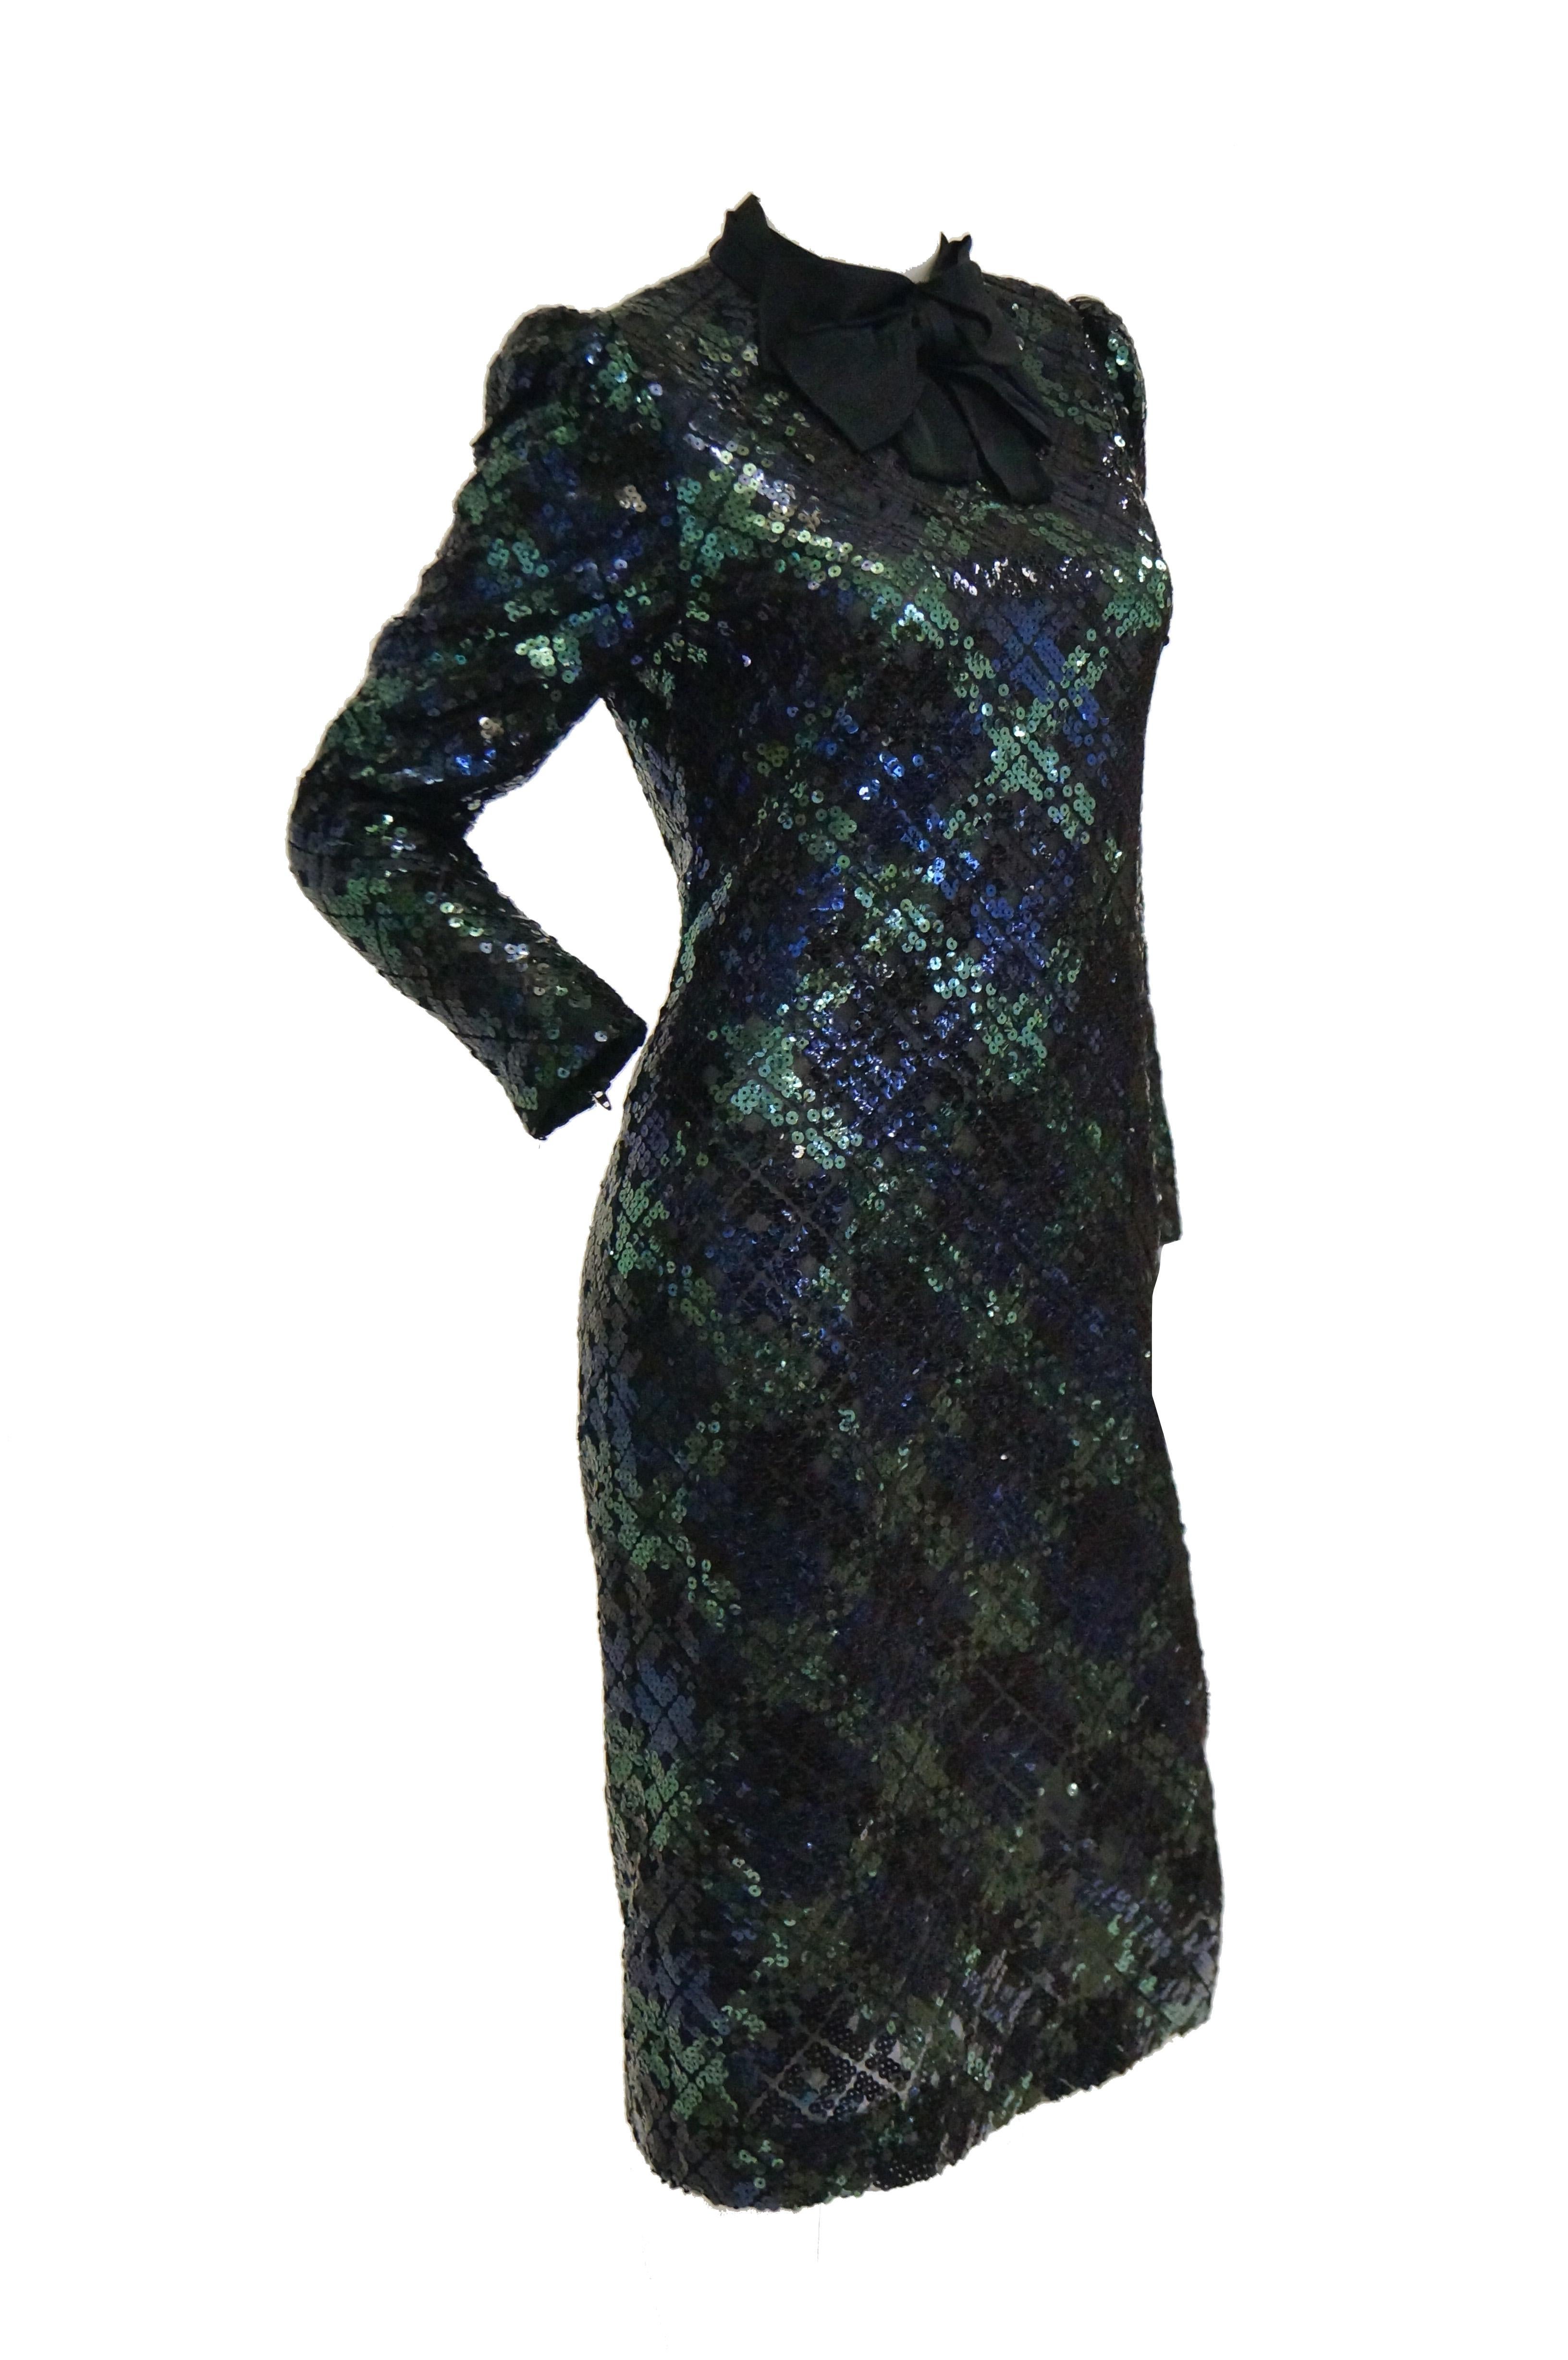 1980s Bill Blass Black, Green and Navy Tartan Sequined Evening Dress For Sale 3